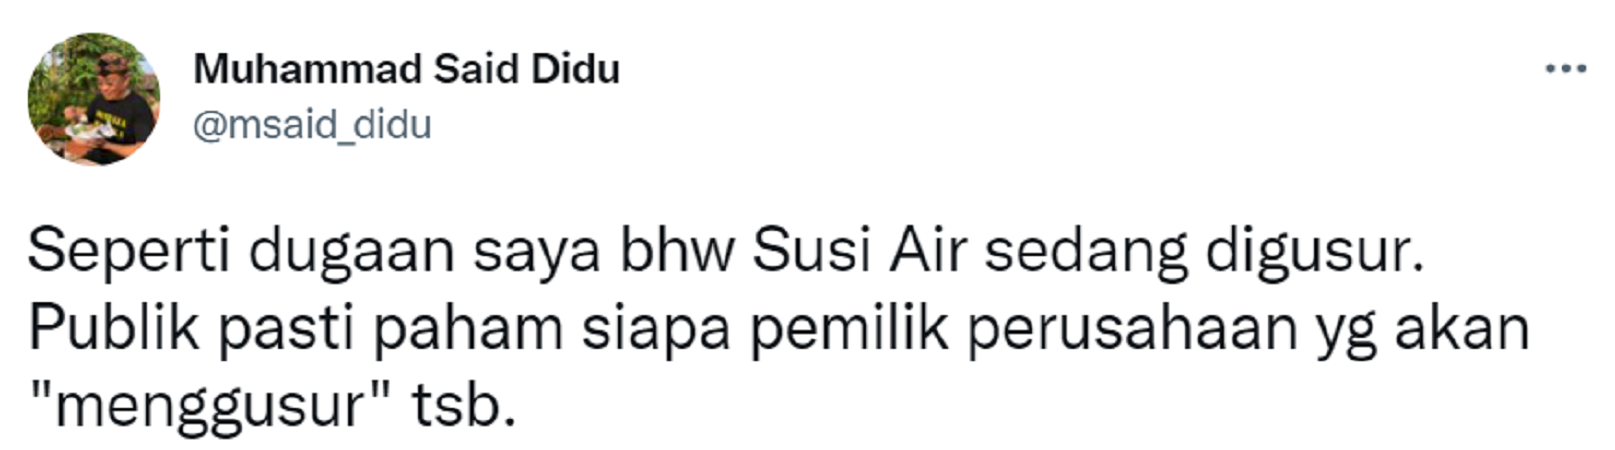 Cuitan Said Didu menanggapi kasus pengusiran Susi Air.